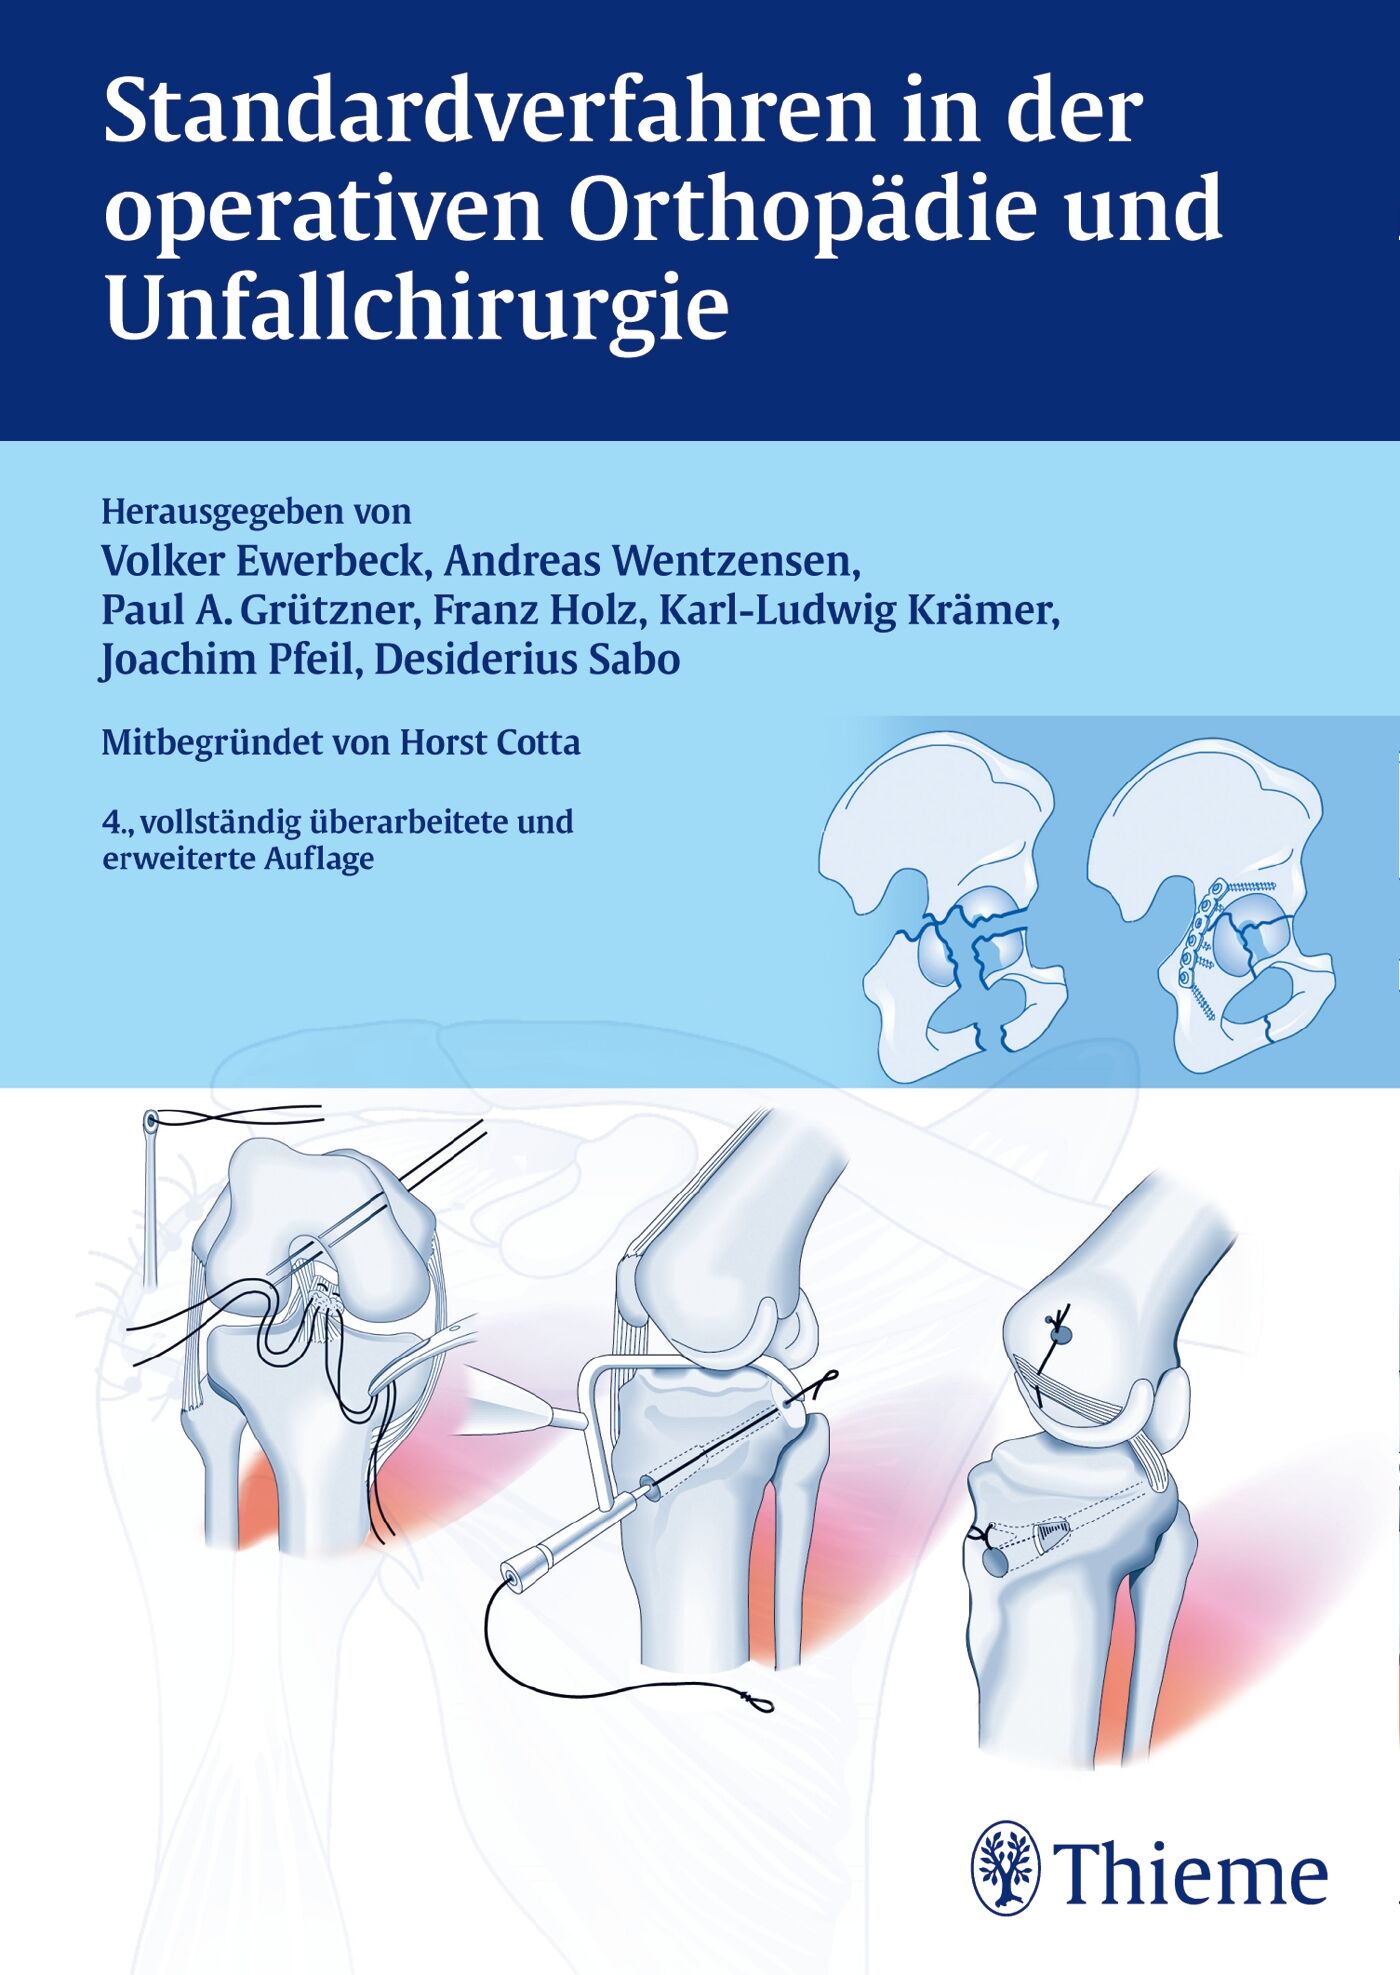 Standardverfahren in der operativen Orthopädie und Unfallchirurgie, 9783132431577